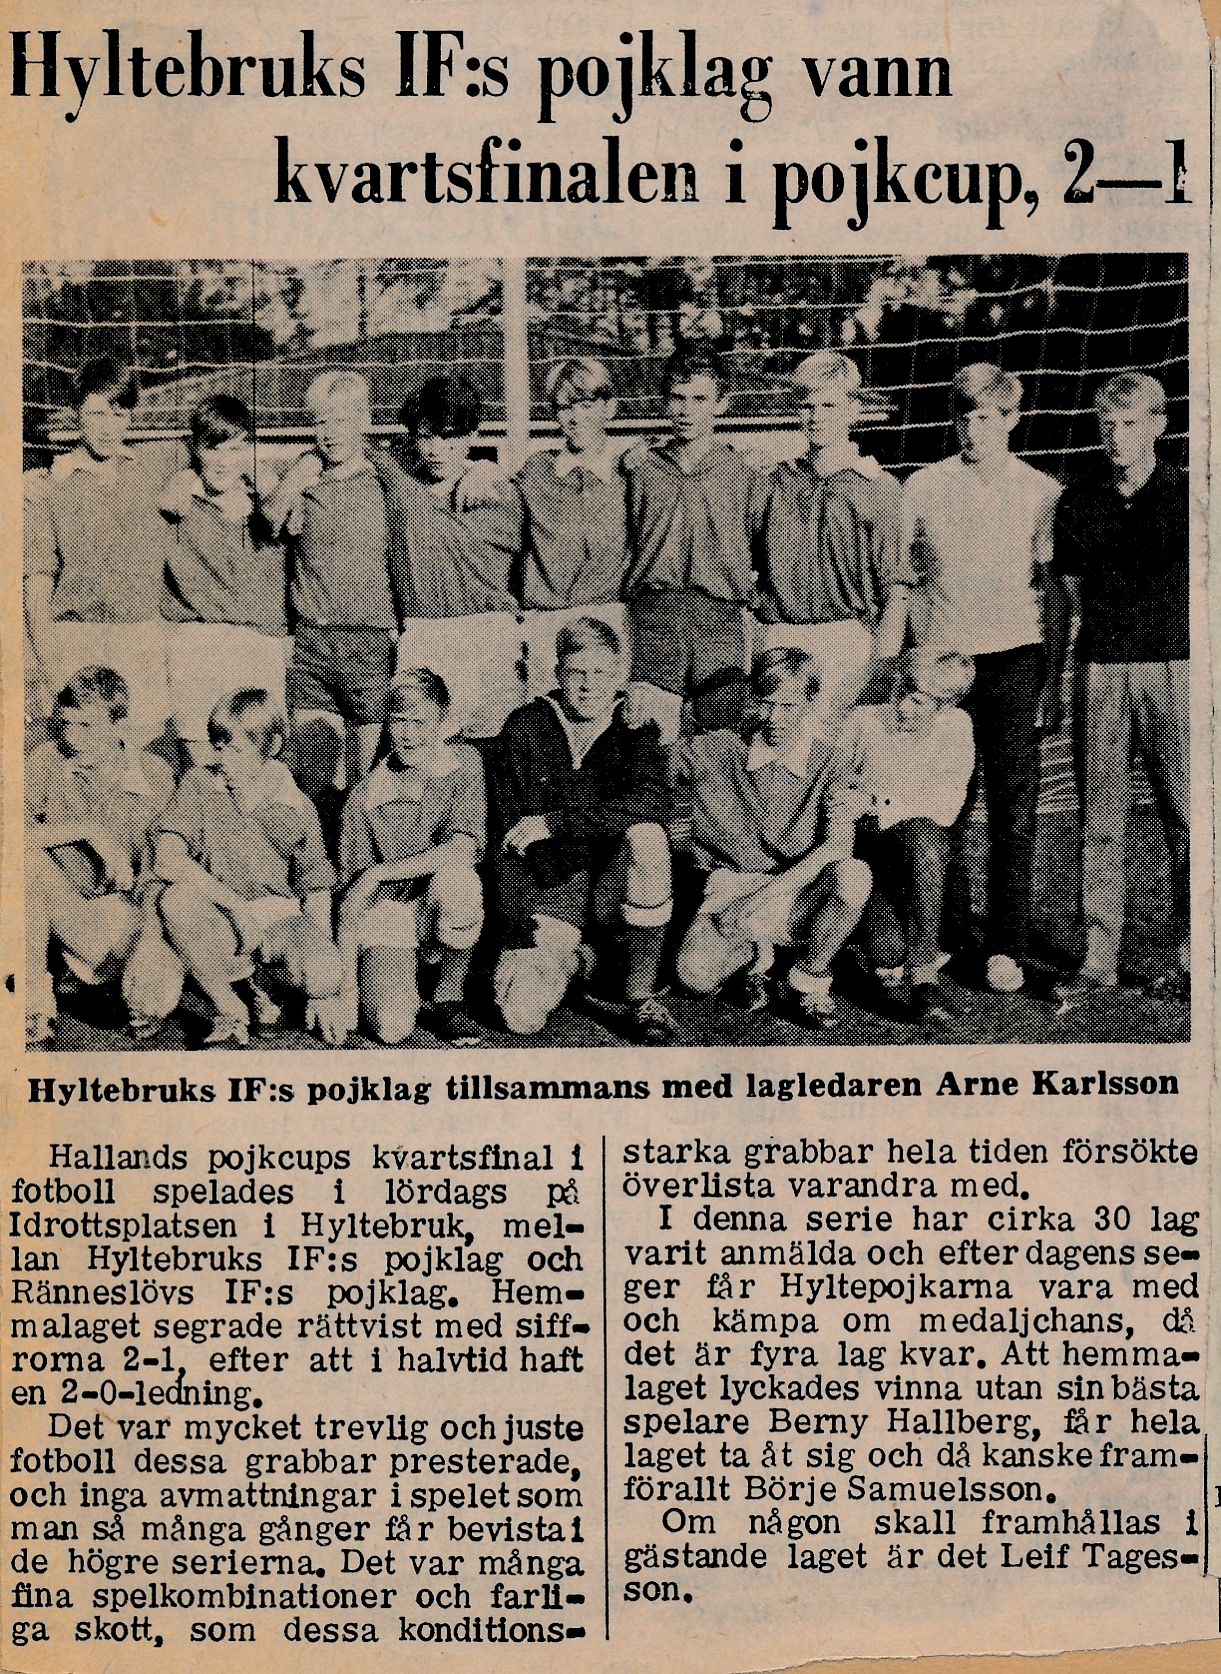 Bild: Tidningsartikel på HIF:s pojklag i pojkcup 1970